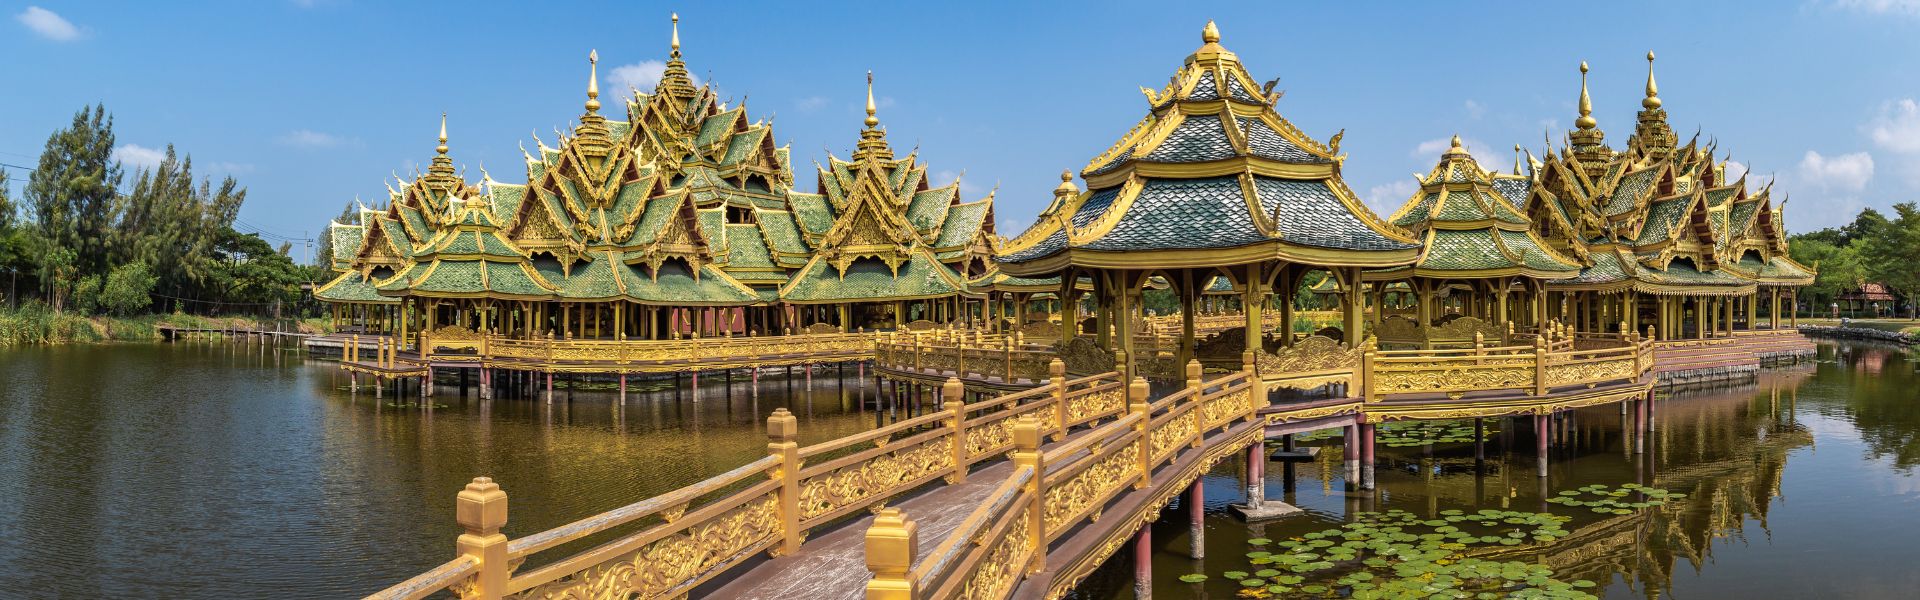 Bangkok - Consejos de viaje | Guía de viajes a Tailandia